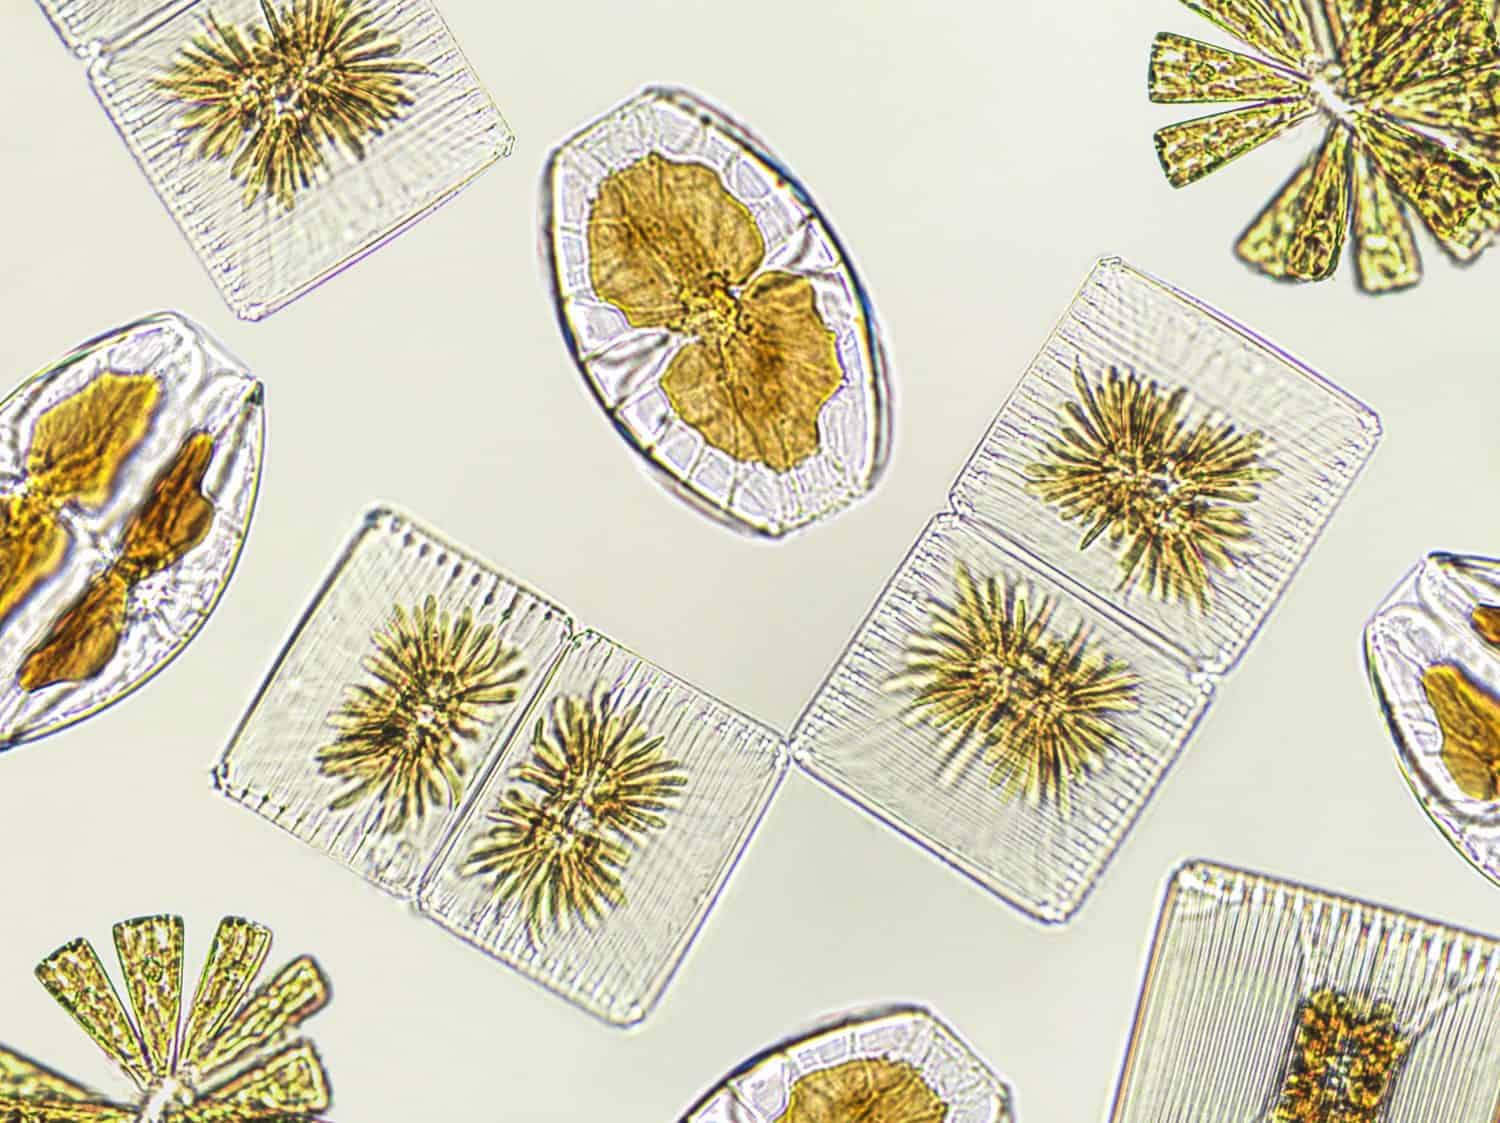 Diatomee, alghe viste al microscopio, fitoplancton, fossili, silice, alghe gialle dorate